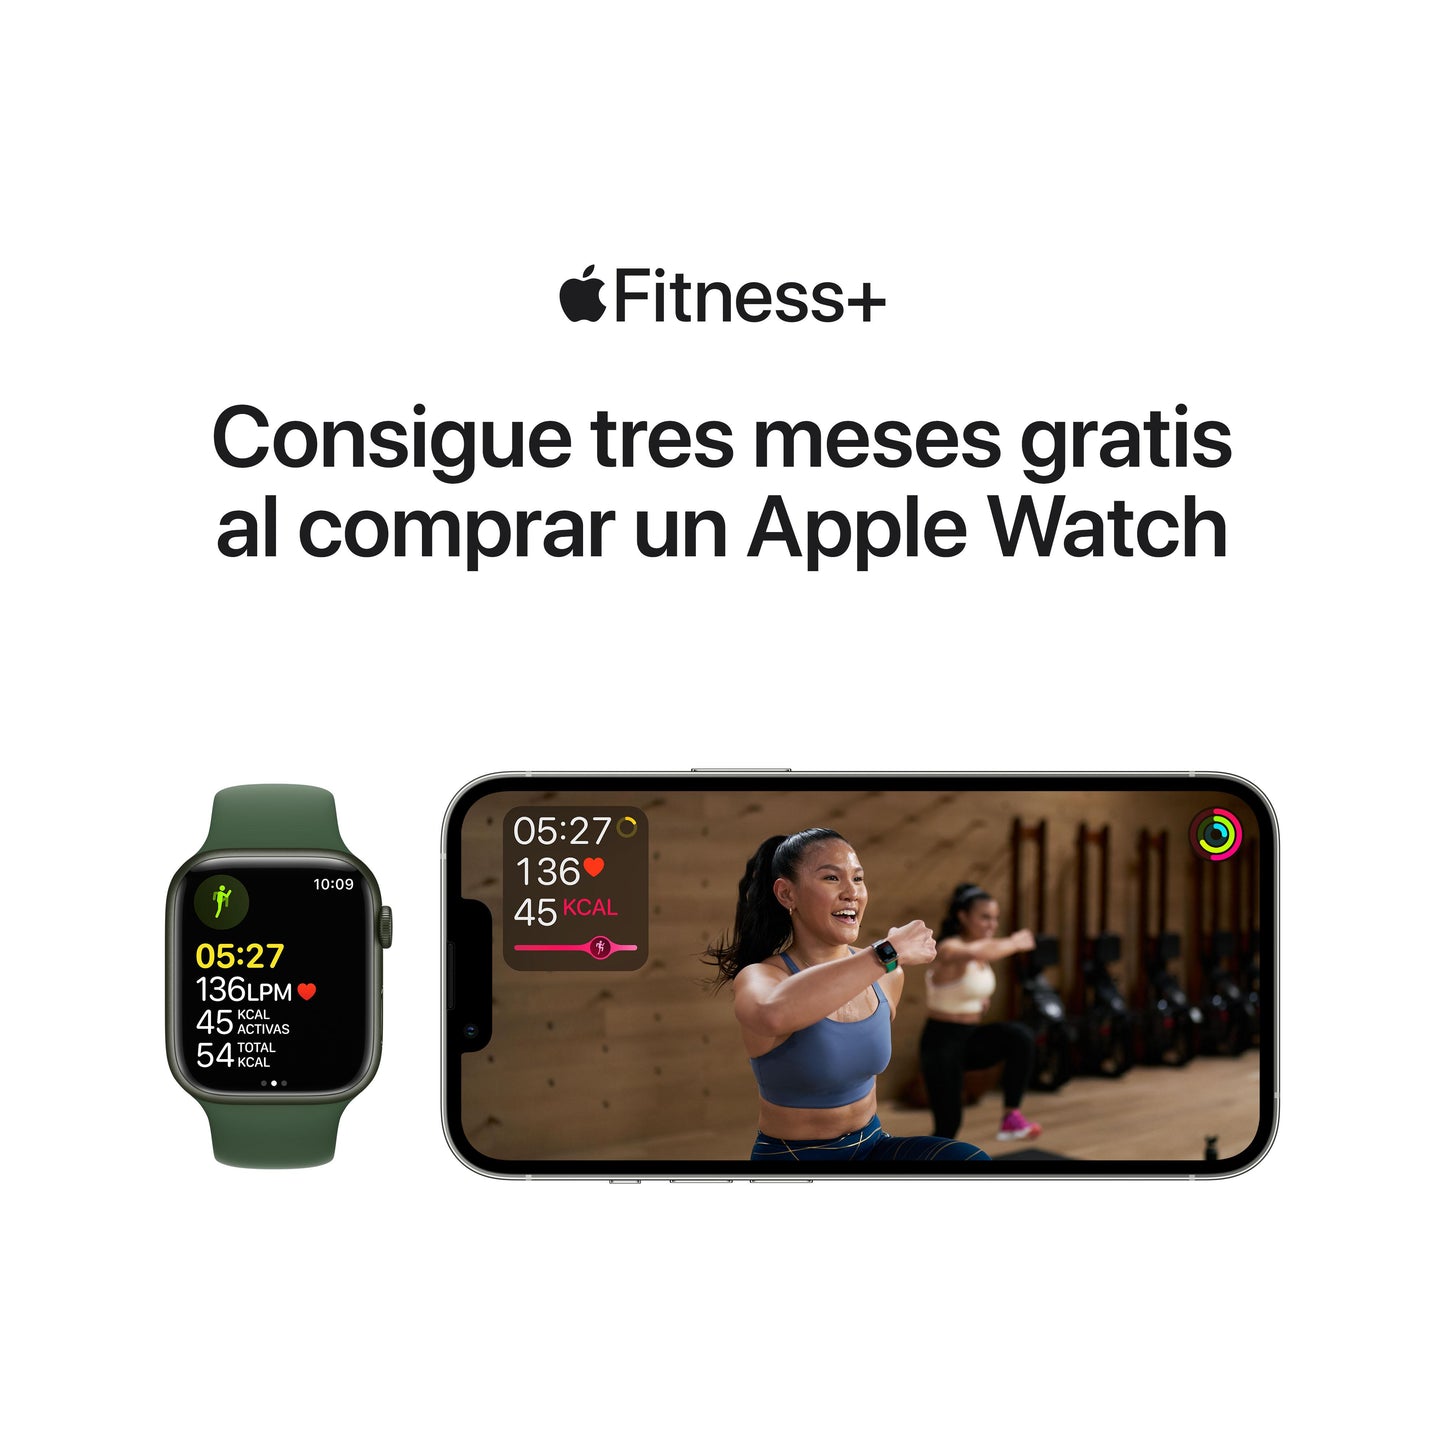 Apple Watch Series 7 (GPS + Cellular) - Caja de aluminio (PRODUCT)RED de 45 mm - Correa deportiva (PRODUCT)RED - Talla única